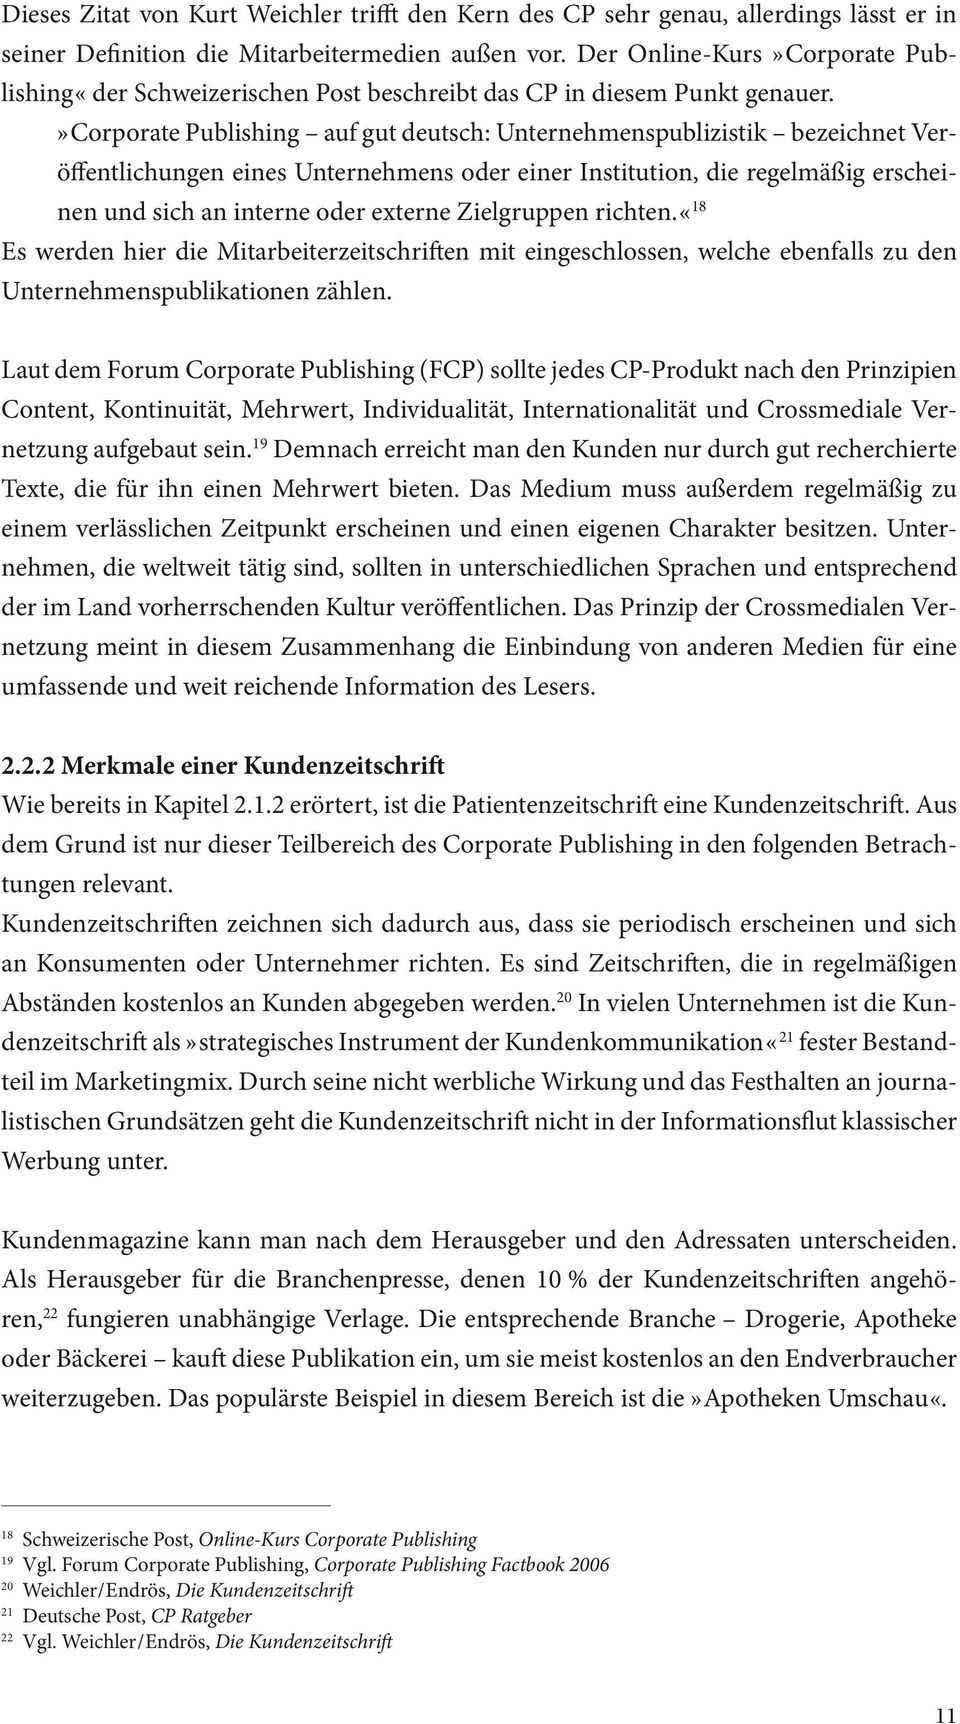 » Corporate Publishing auf gut deutsch: Unternehmenspublizistik bezeichnet Veröffentlichungen eines Unternehmens oder einer Institution, die regelmäßig erscheinen und sich an interne oder externe